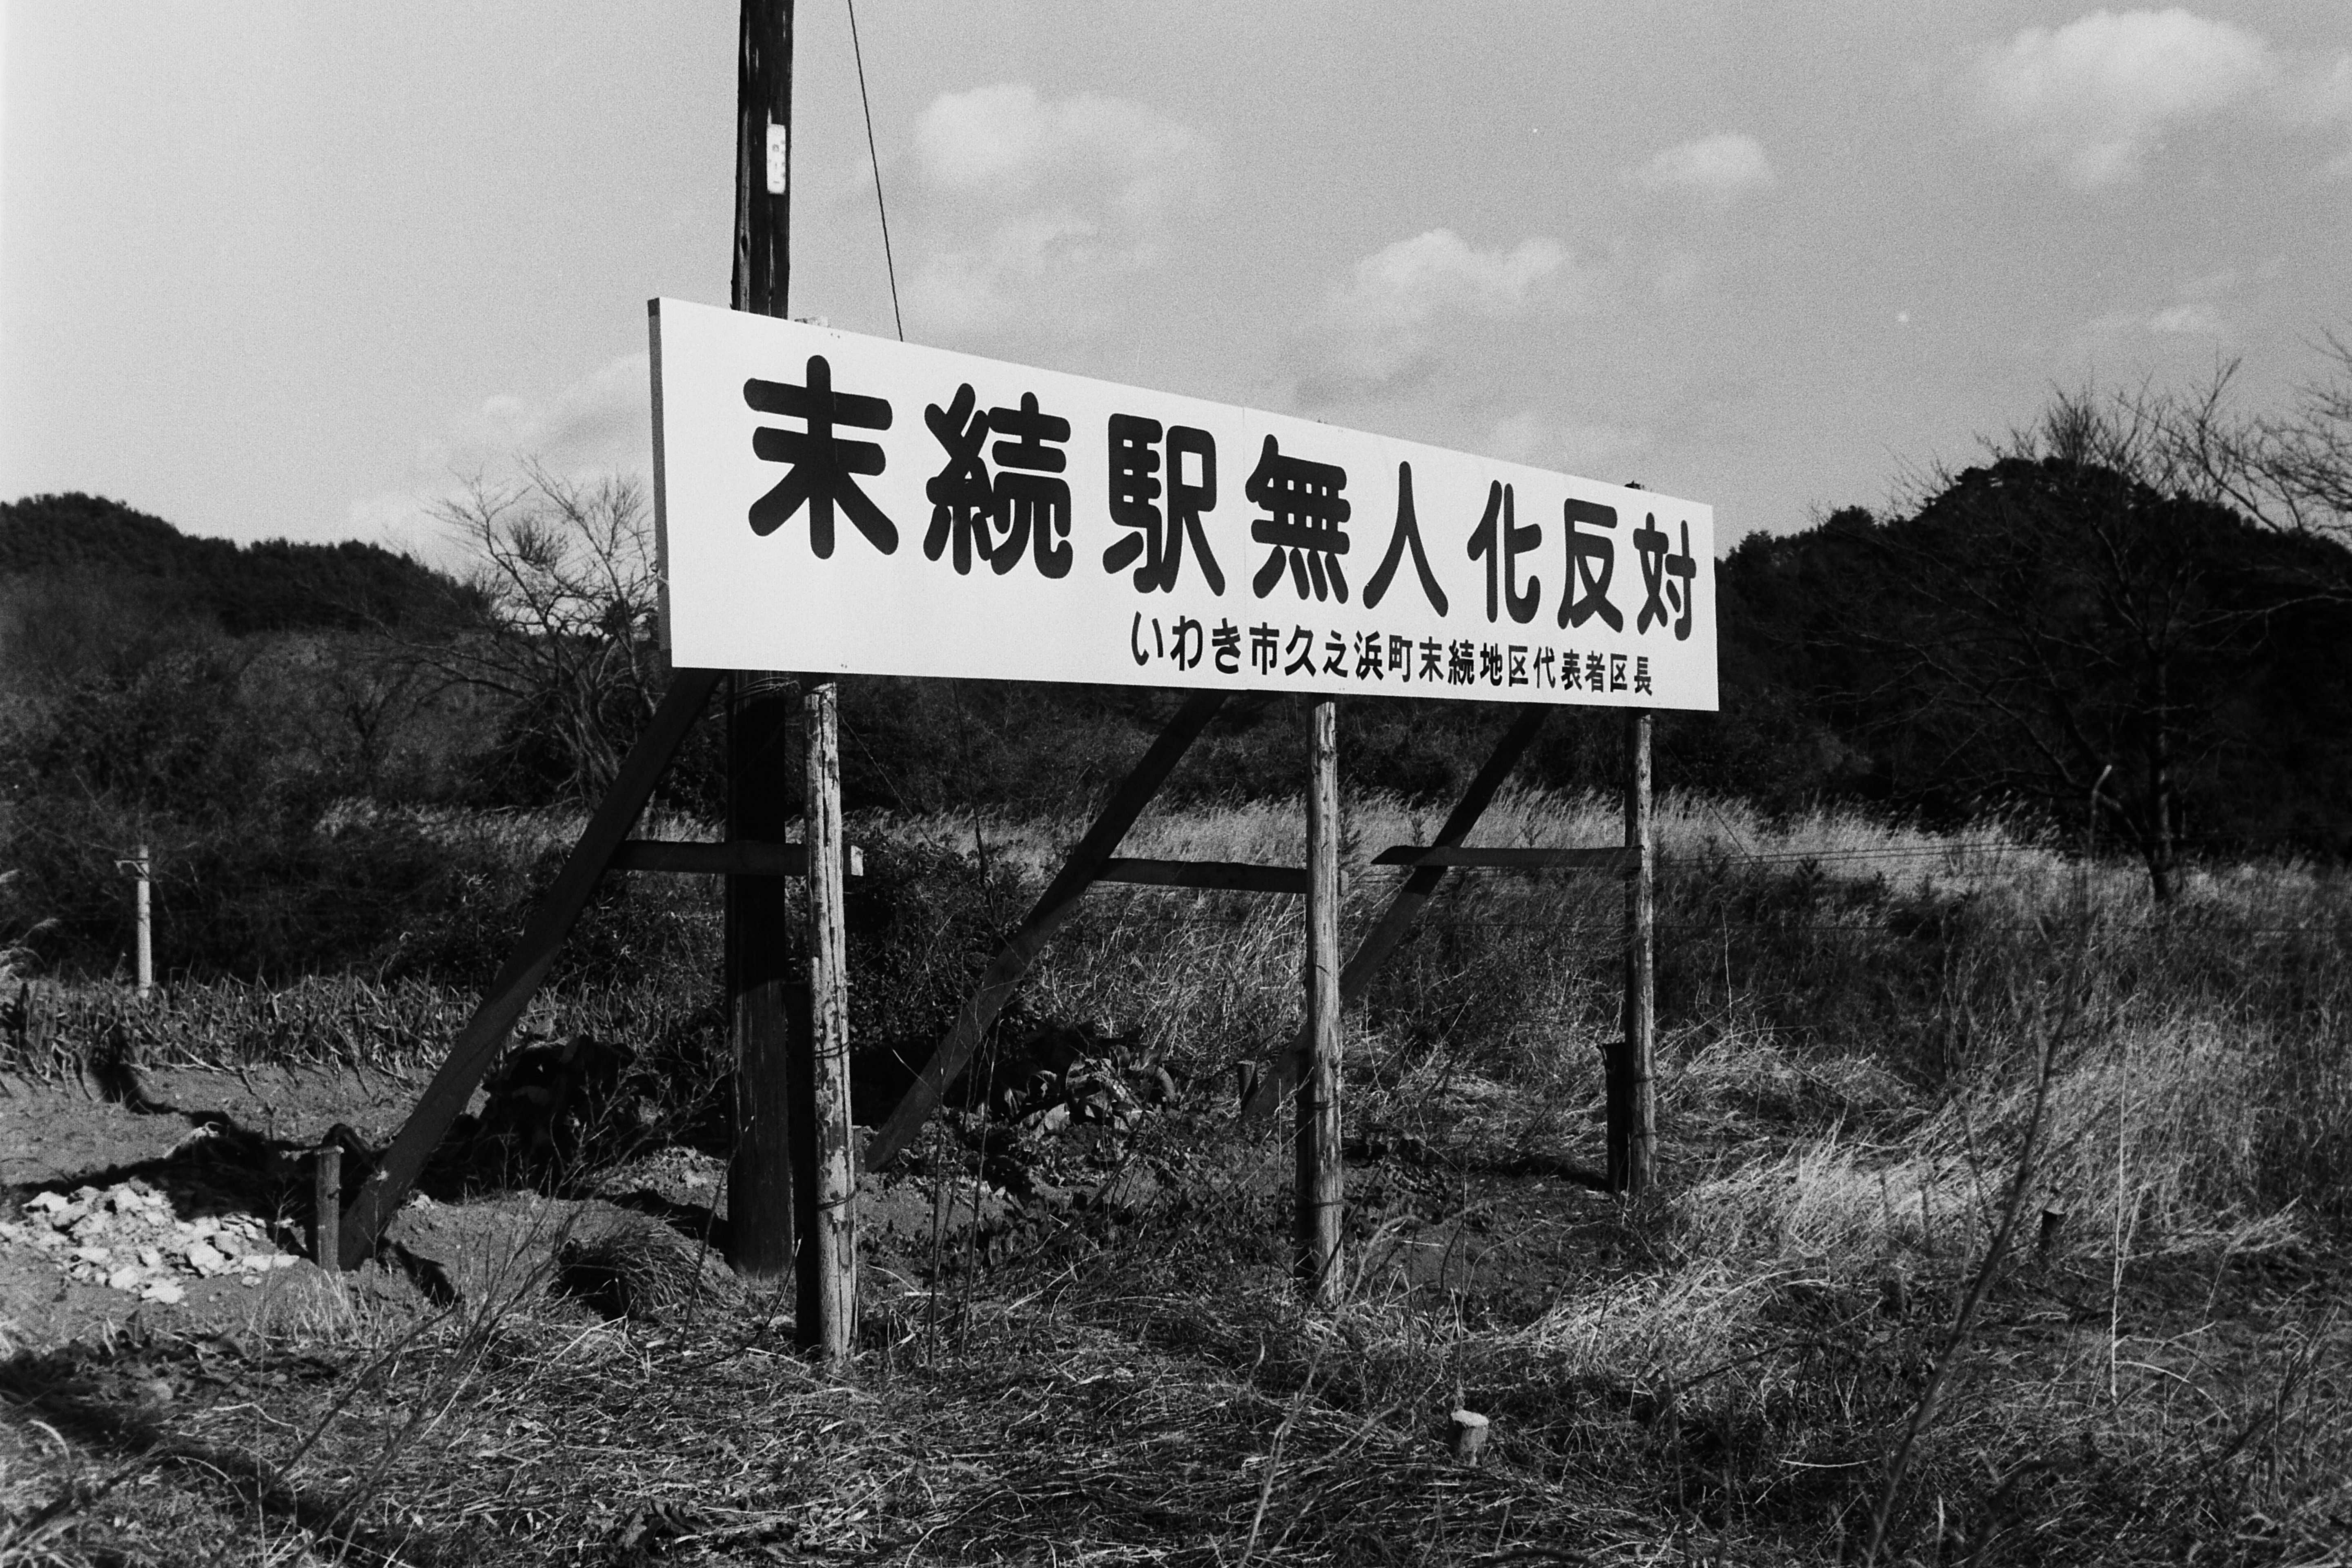 末続駅無人化反対の看板(昭和51年12月、いわき市撮影)